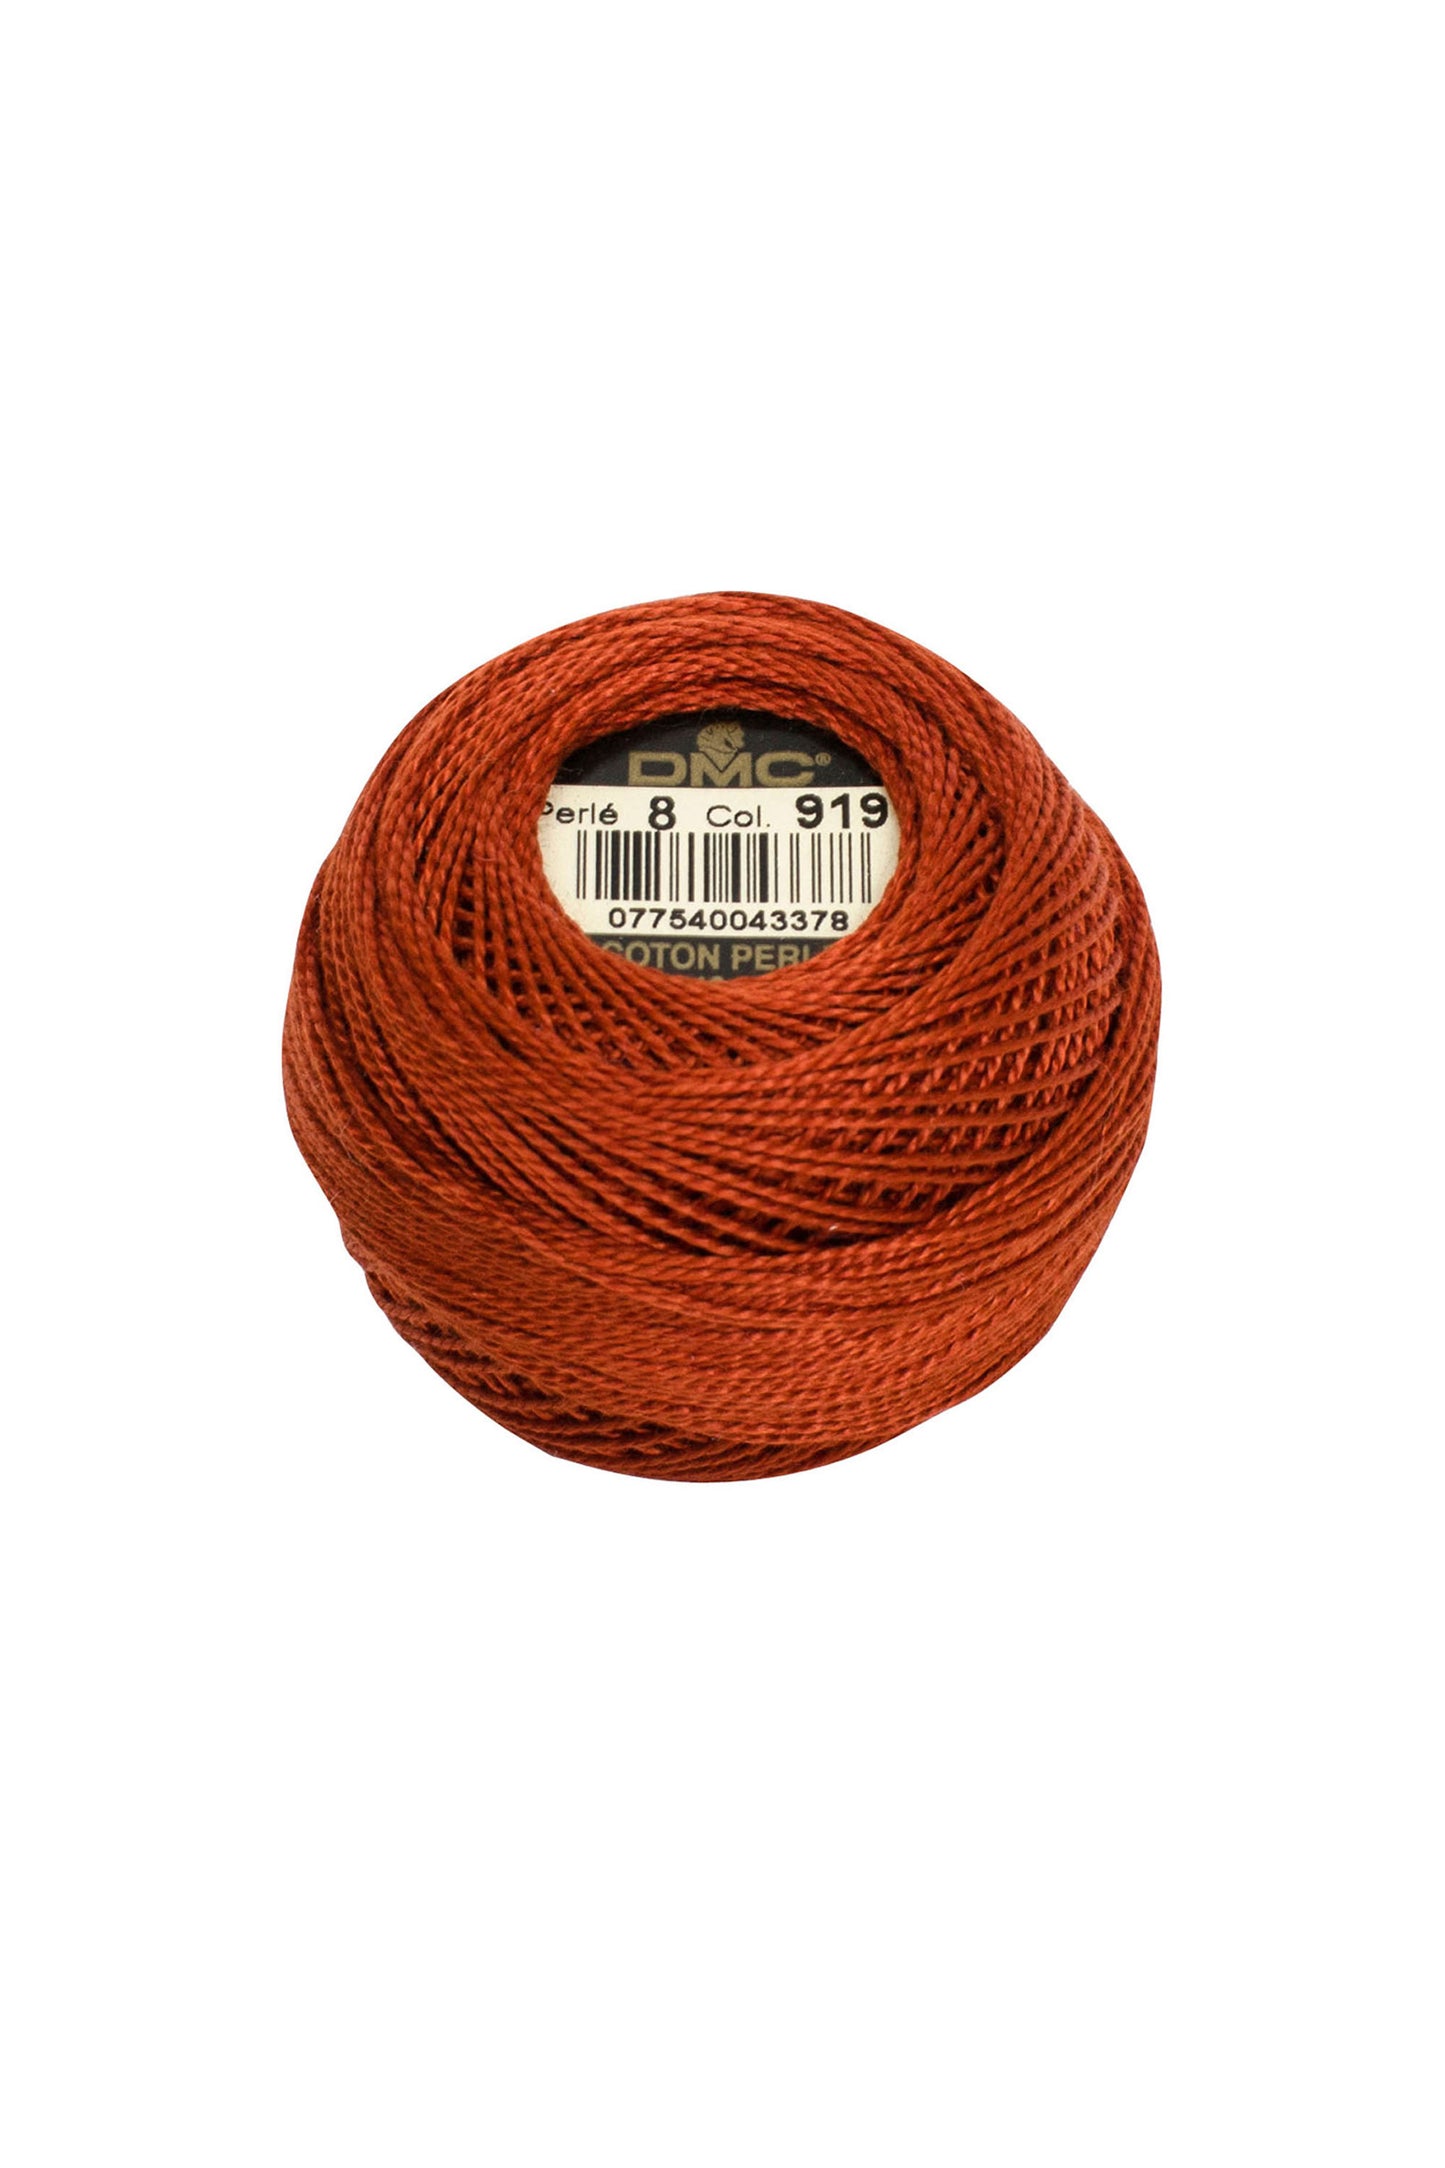 919 Red Copper - DMC #5 Perle Cotton Ball